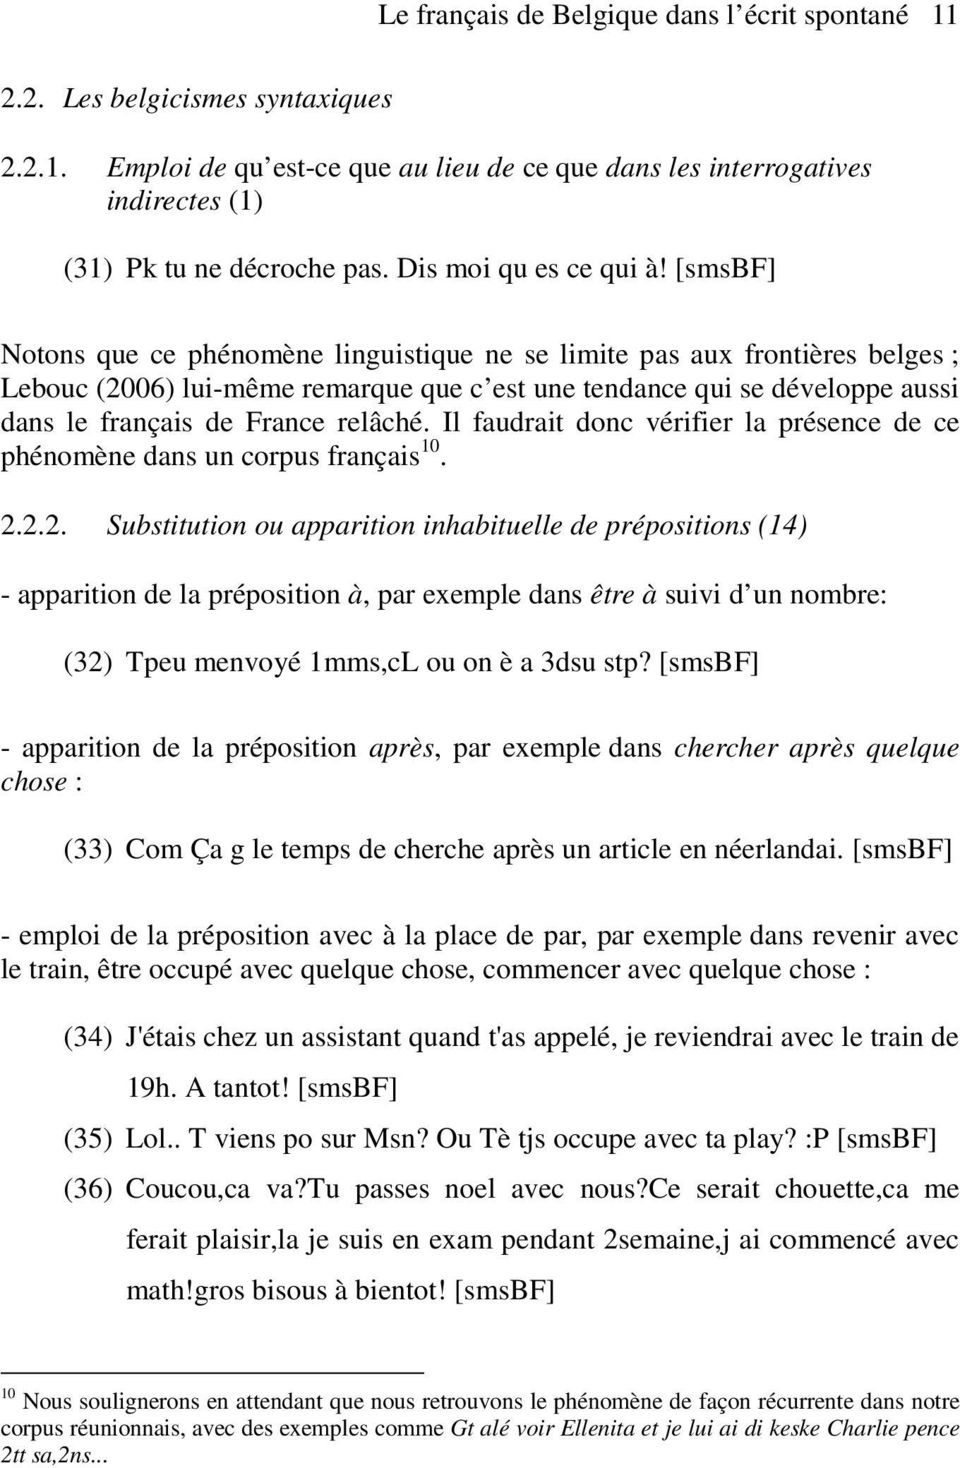 [smsbf] Notons que ce phénomène linguistique ne se limite pas aux frontières belges ; Lebouc (2006) lui-même remarque que c est une tendance qui se développe aussi dans le français de France relâché.